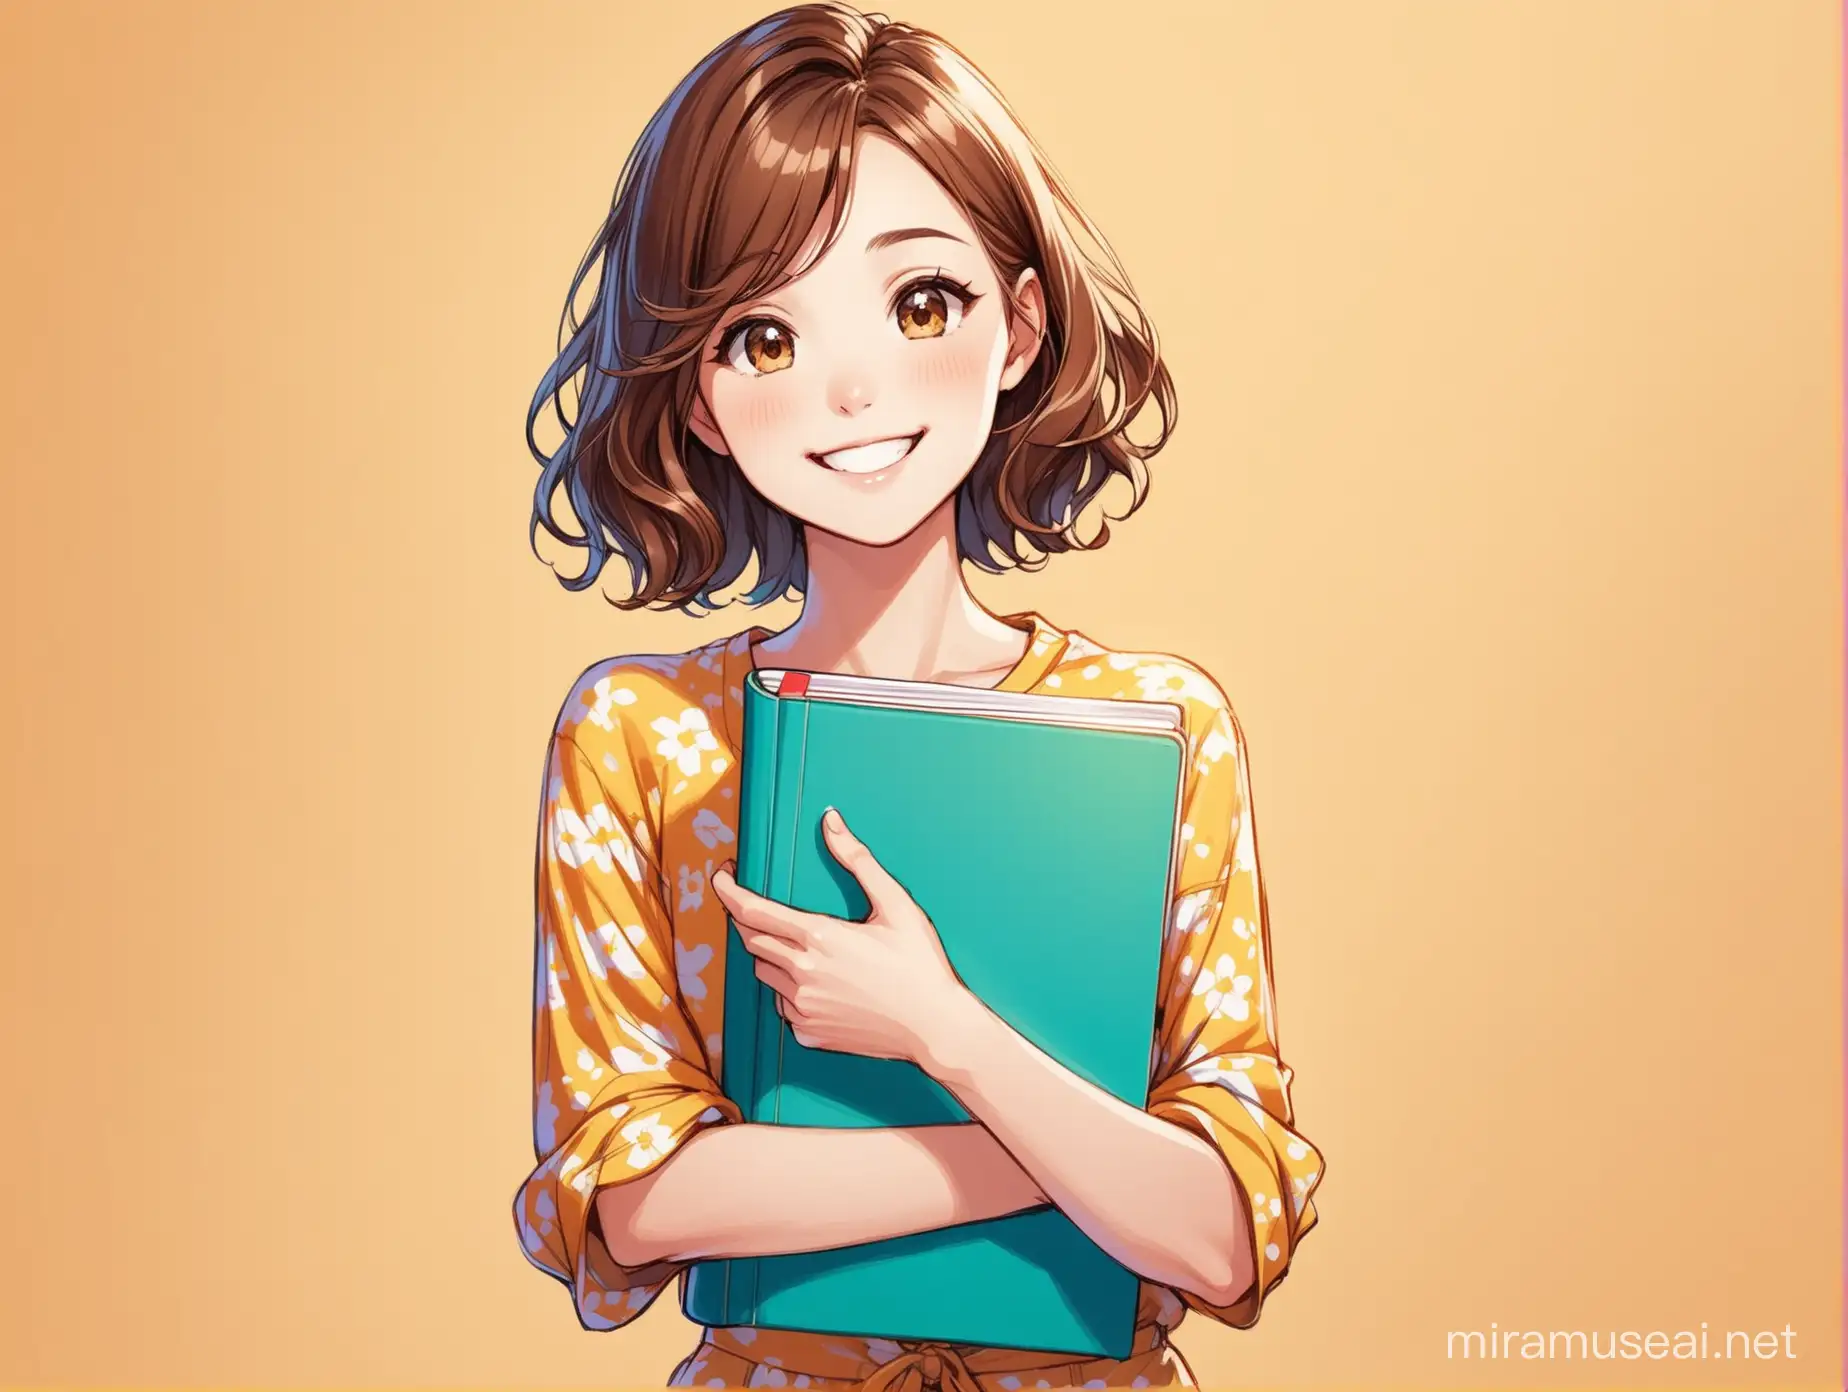 Persona carismática sonriente,  delgada, con cabello castaño ondulado corto, vestimenta colorida y que lleve una libreta de dibujo.